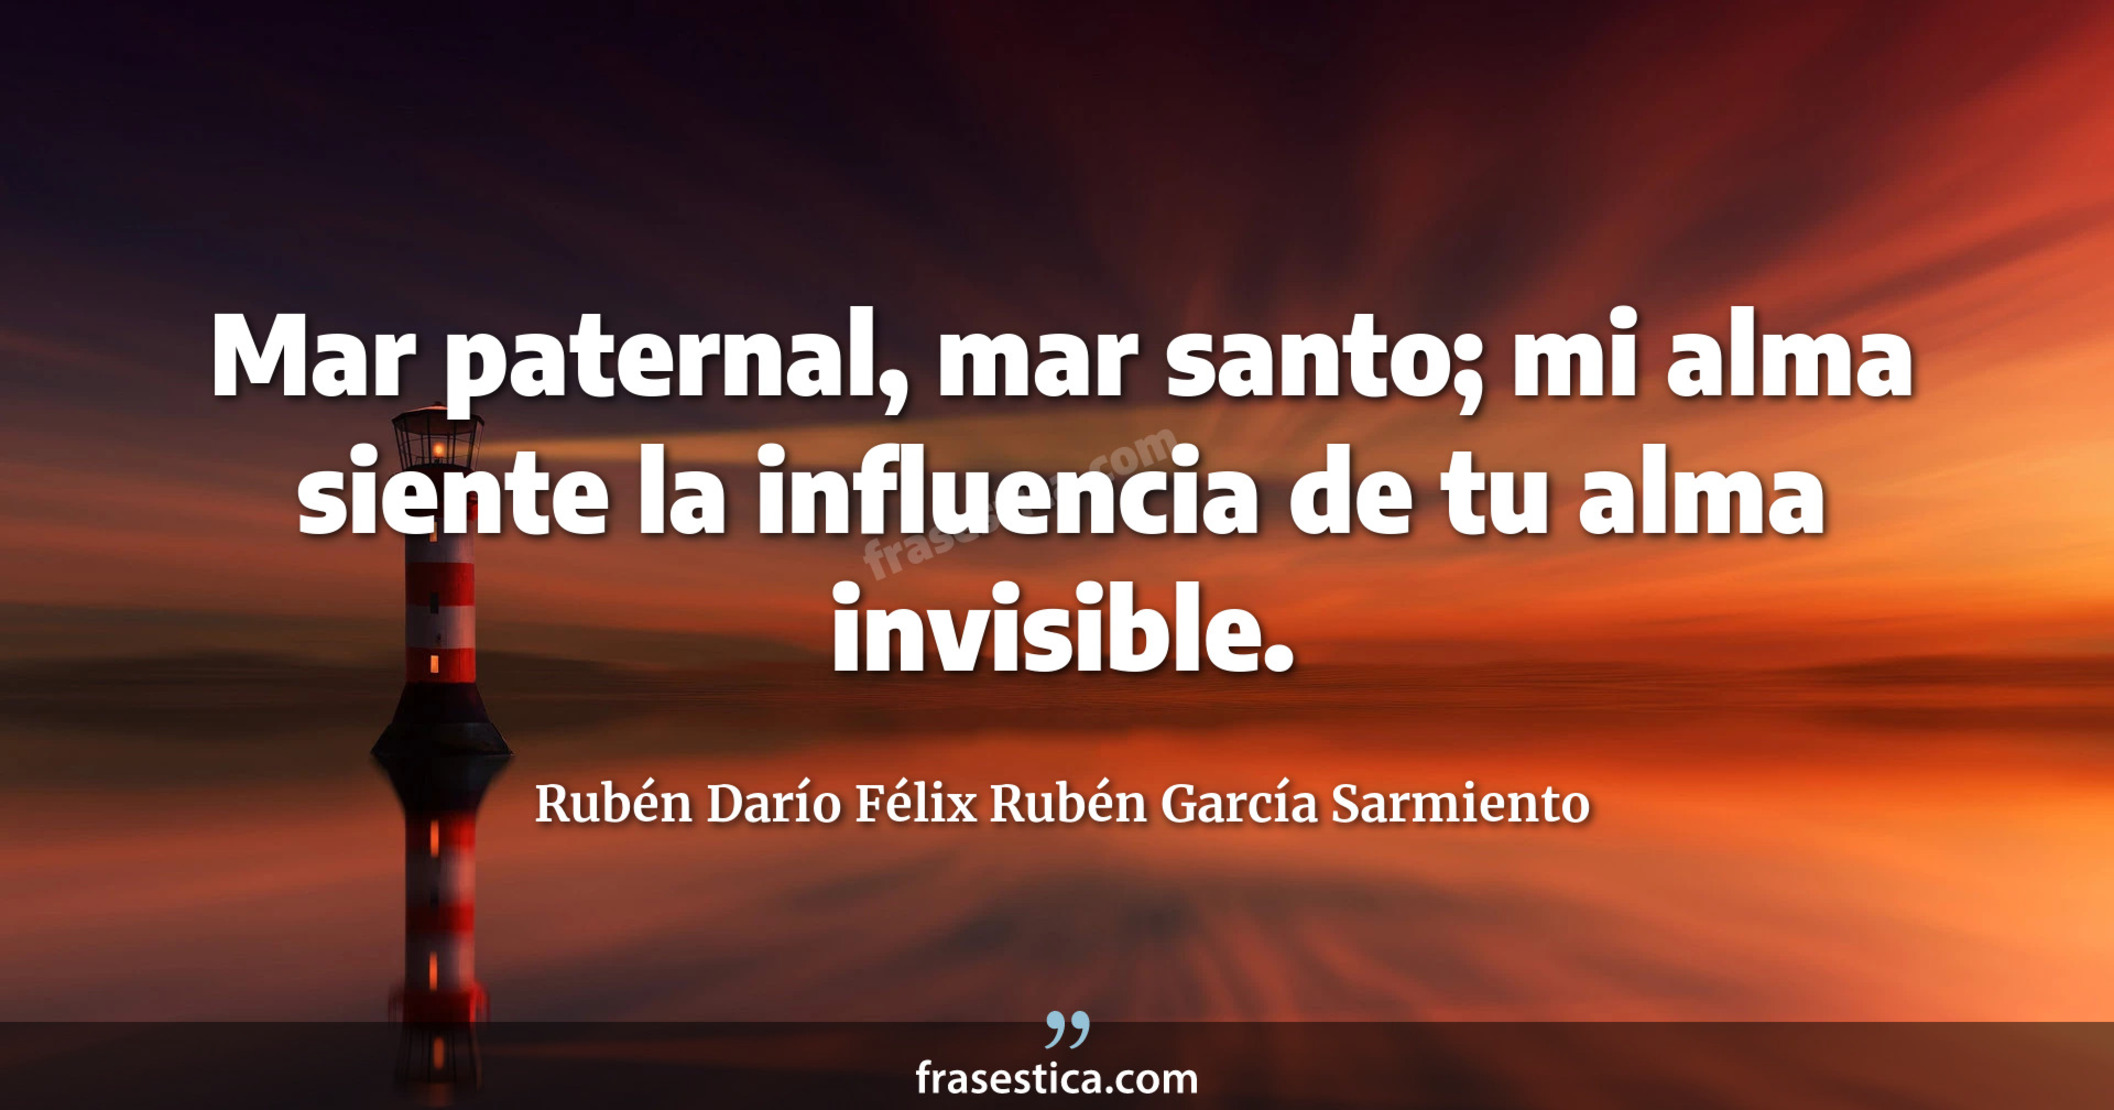 Mar paternal, mar santo; mi alma siente la influencia de tu alma invisible.  - Rubén Darío Félix Rubén García Sarmiento